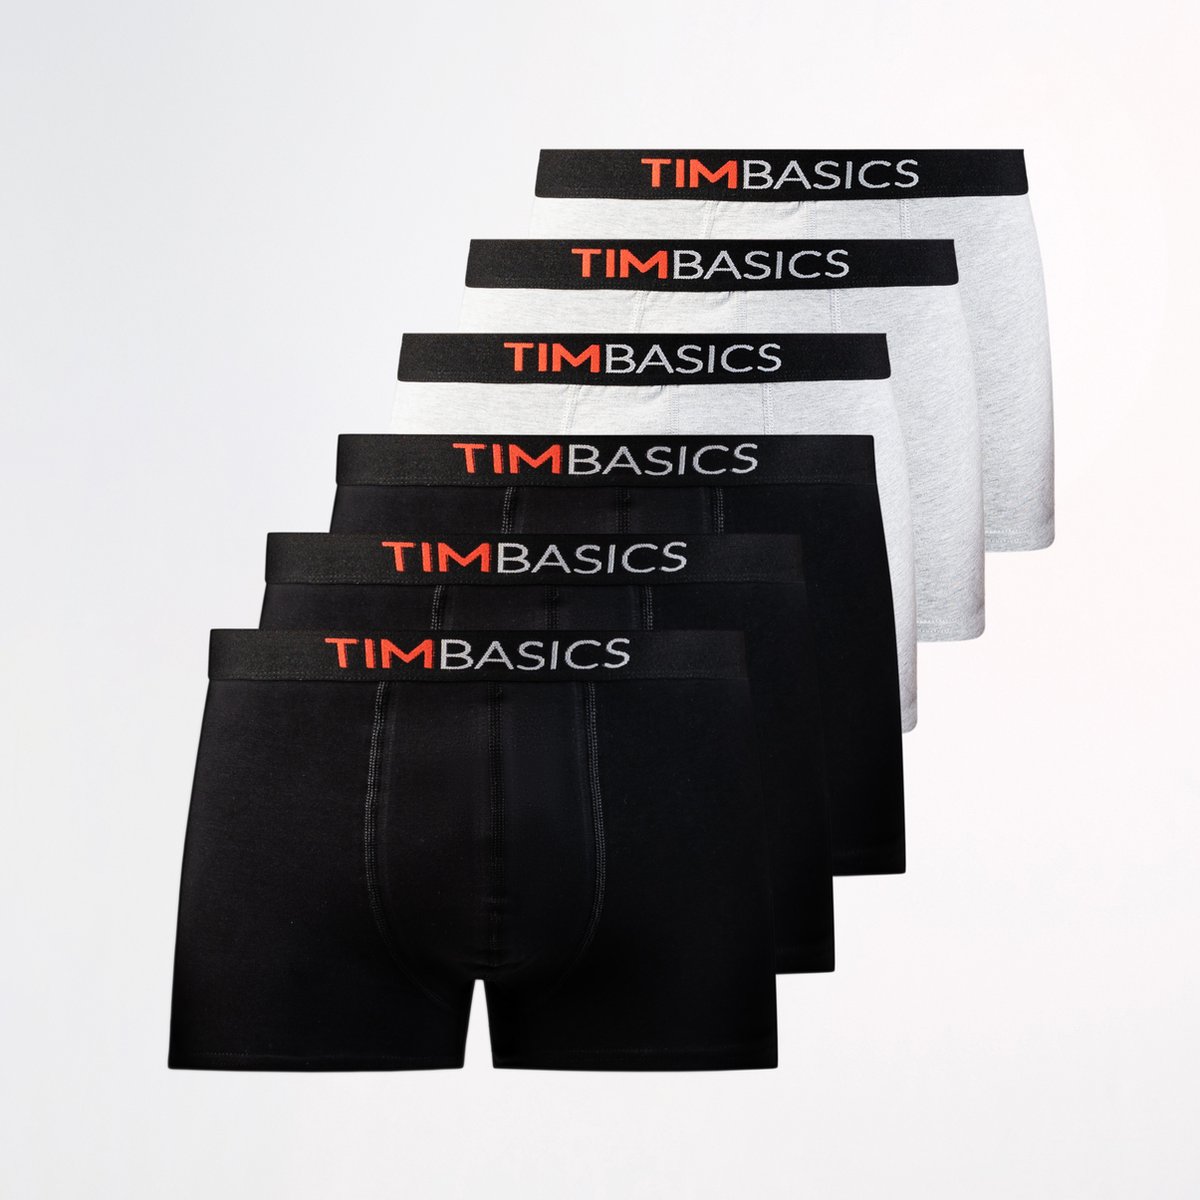 TimBasics - Heren boxershorts 6 pack - Zwart & Grijs – Maat M - Heren ondergoed